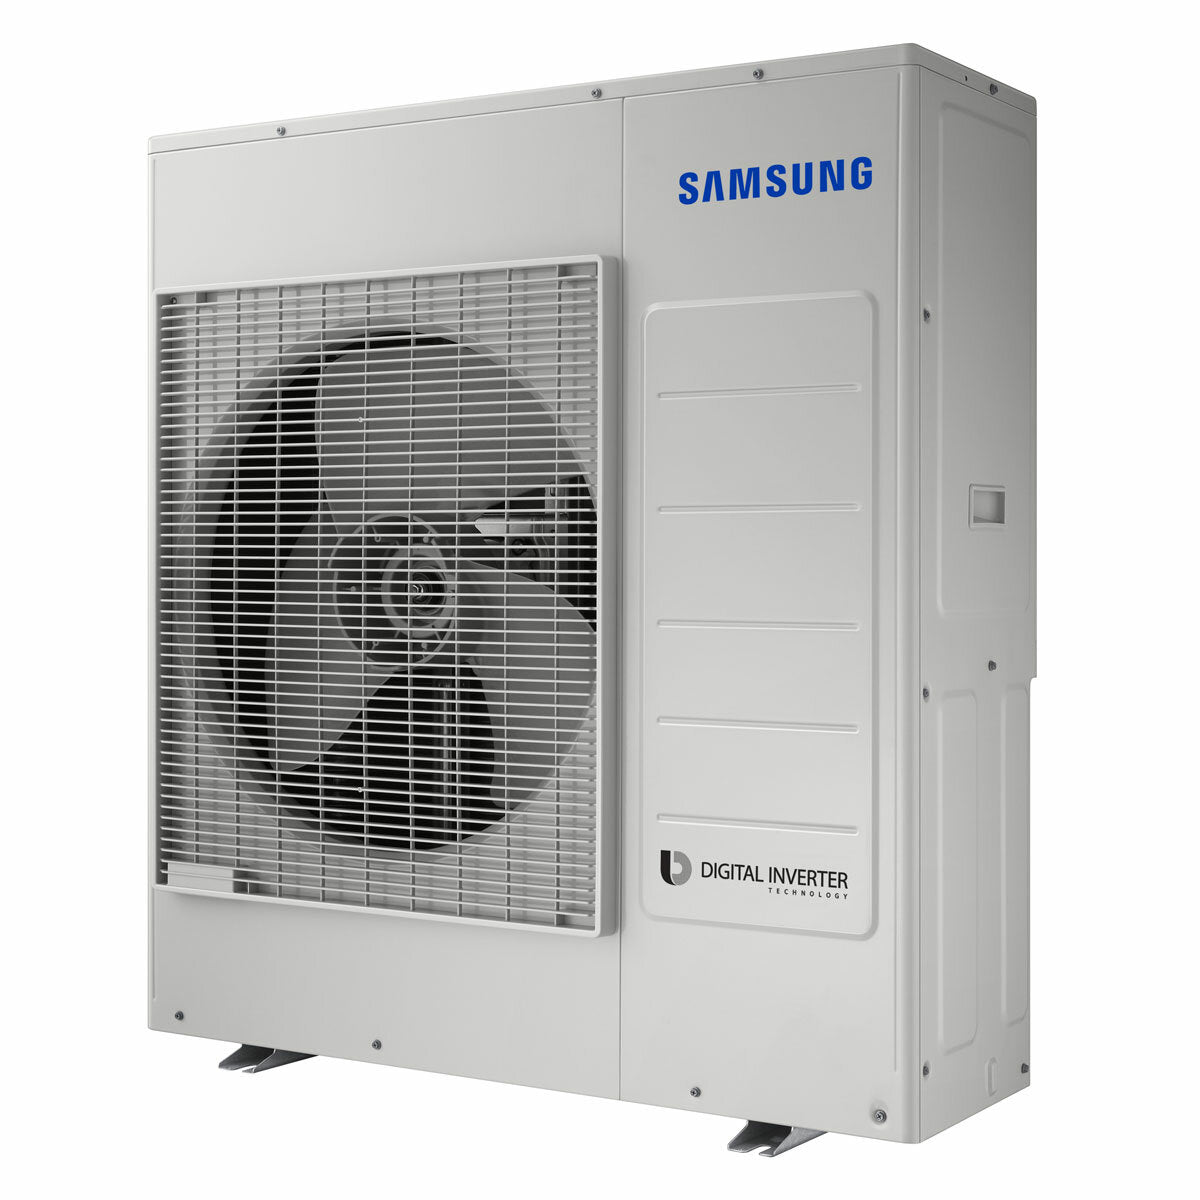 Climatiseur sans vent Samsung Avant penta split 7000 + 7000 + 7000 + 9000 + 9000 BTU onduleur A ++ unité extérieure wifi 10,0 kW